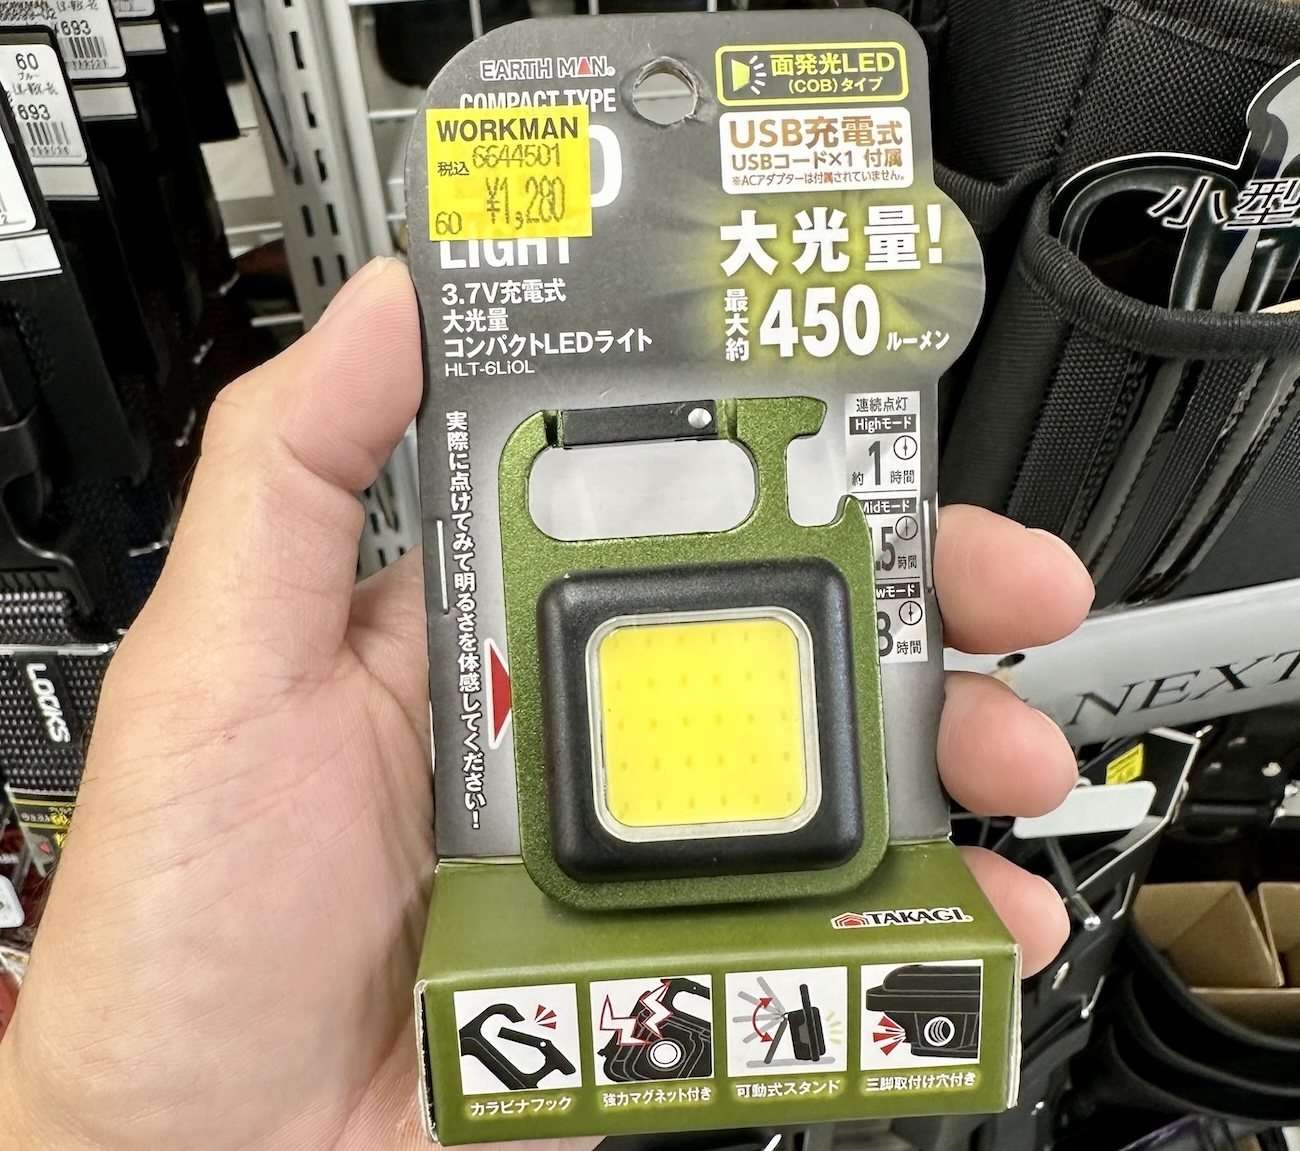 ワークマンで買った「小型LEDライト」とほぼ同じ商品がゲオで約400円